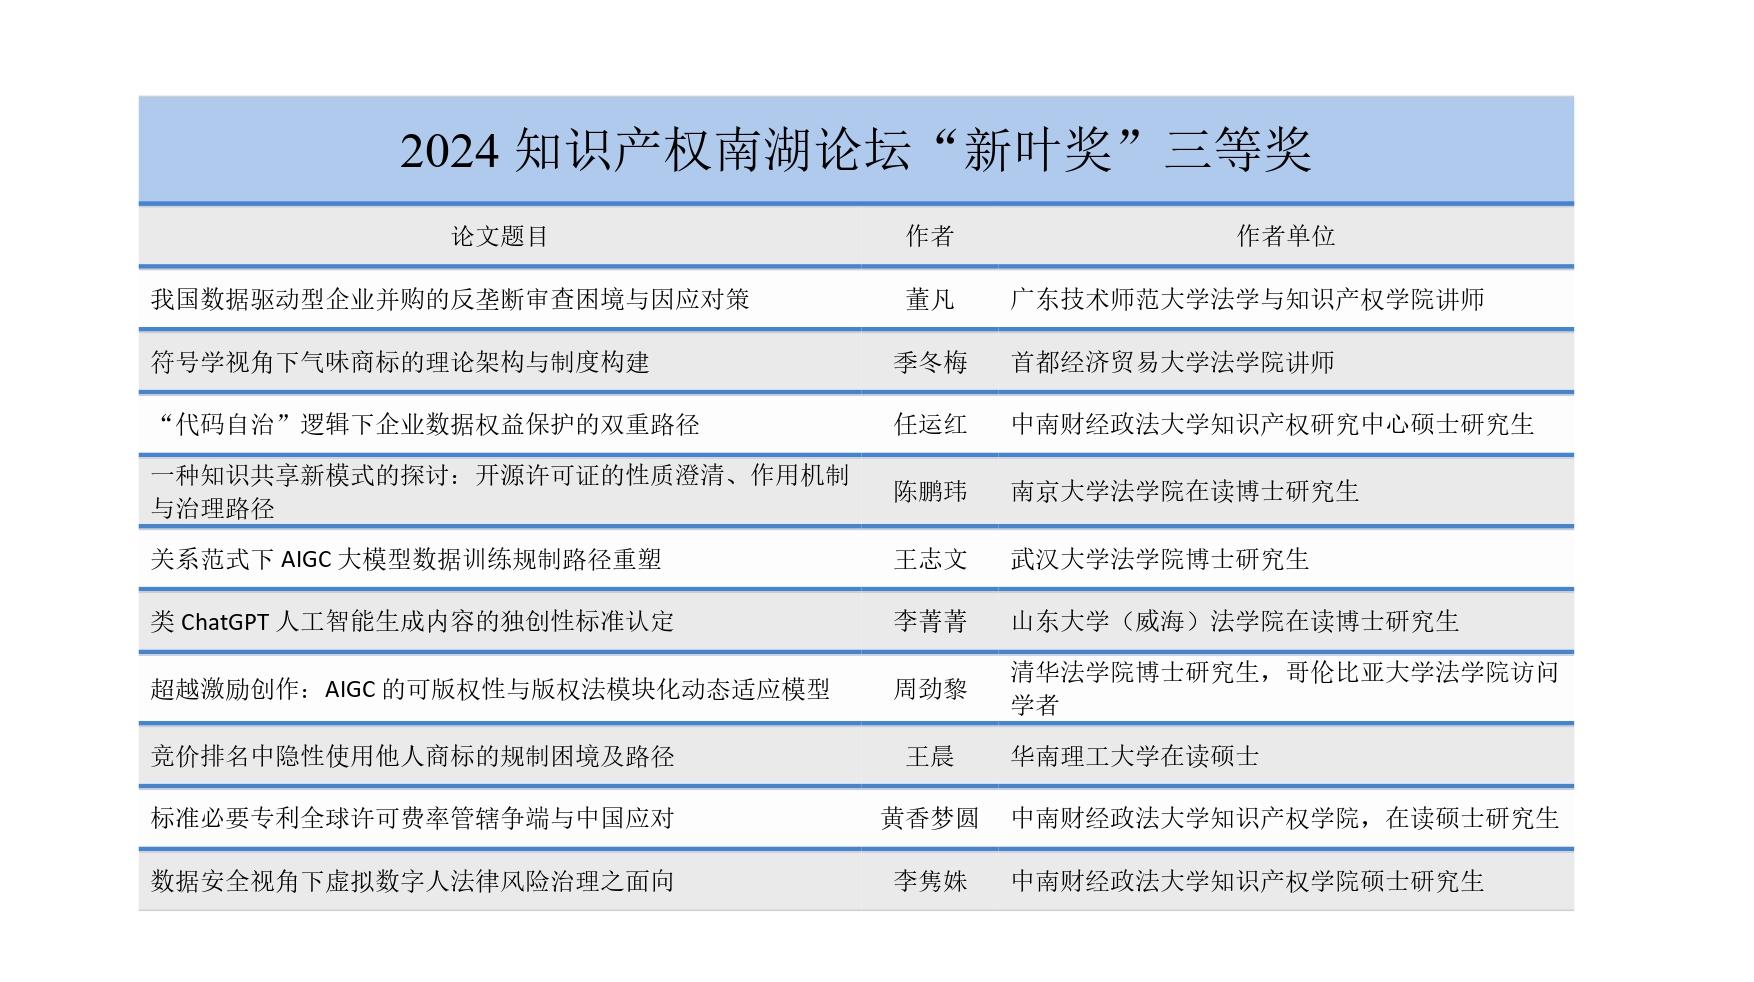 2024知识产权南湖论坛征文获奖名单_page-0001.jpg